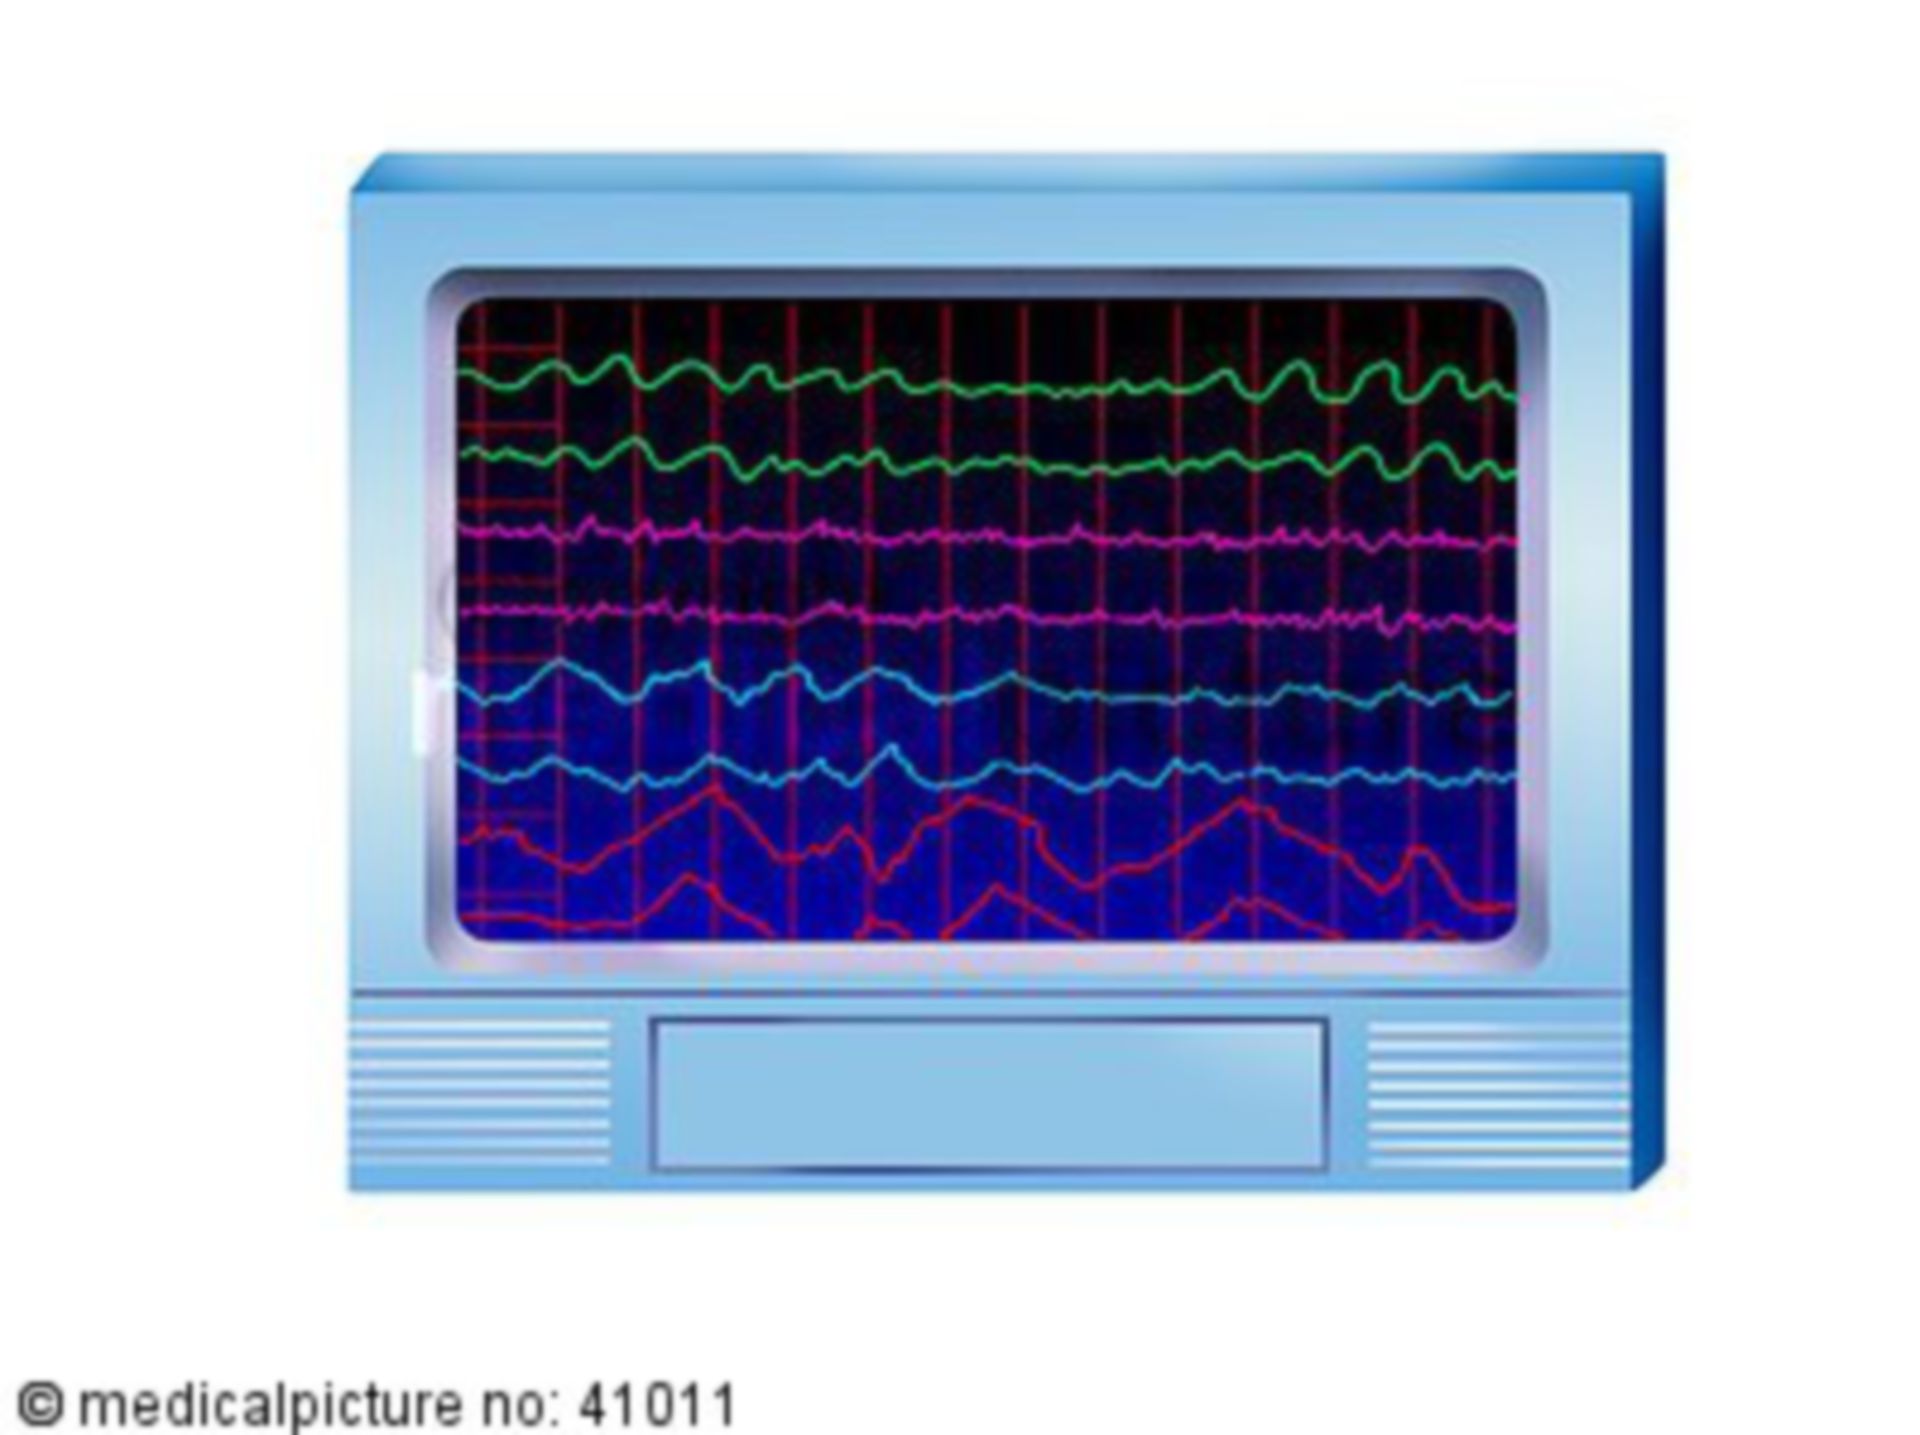 EEG waves, electroencephalography